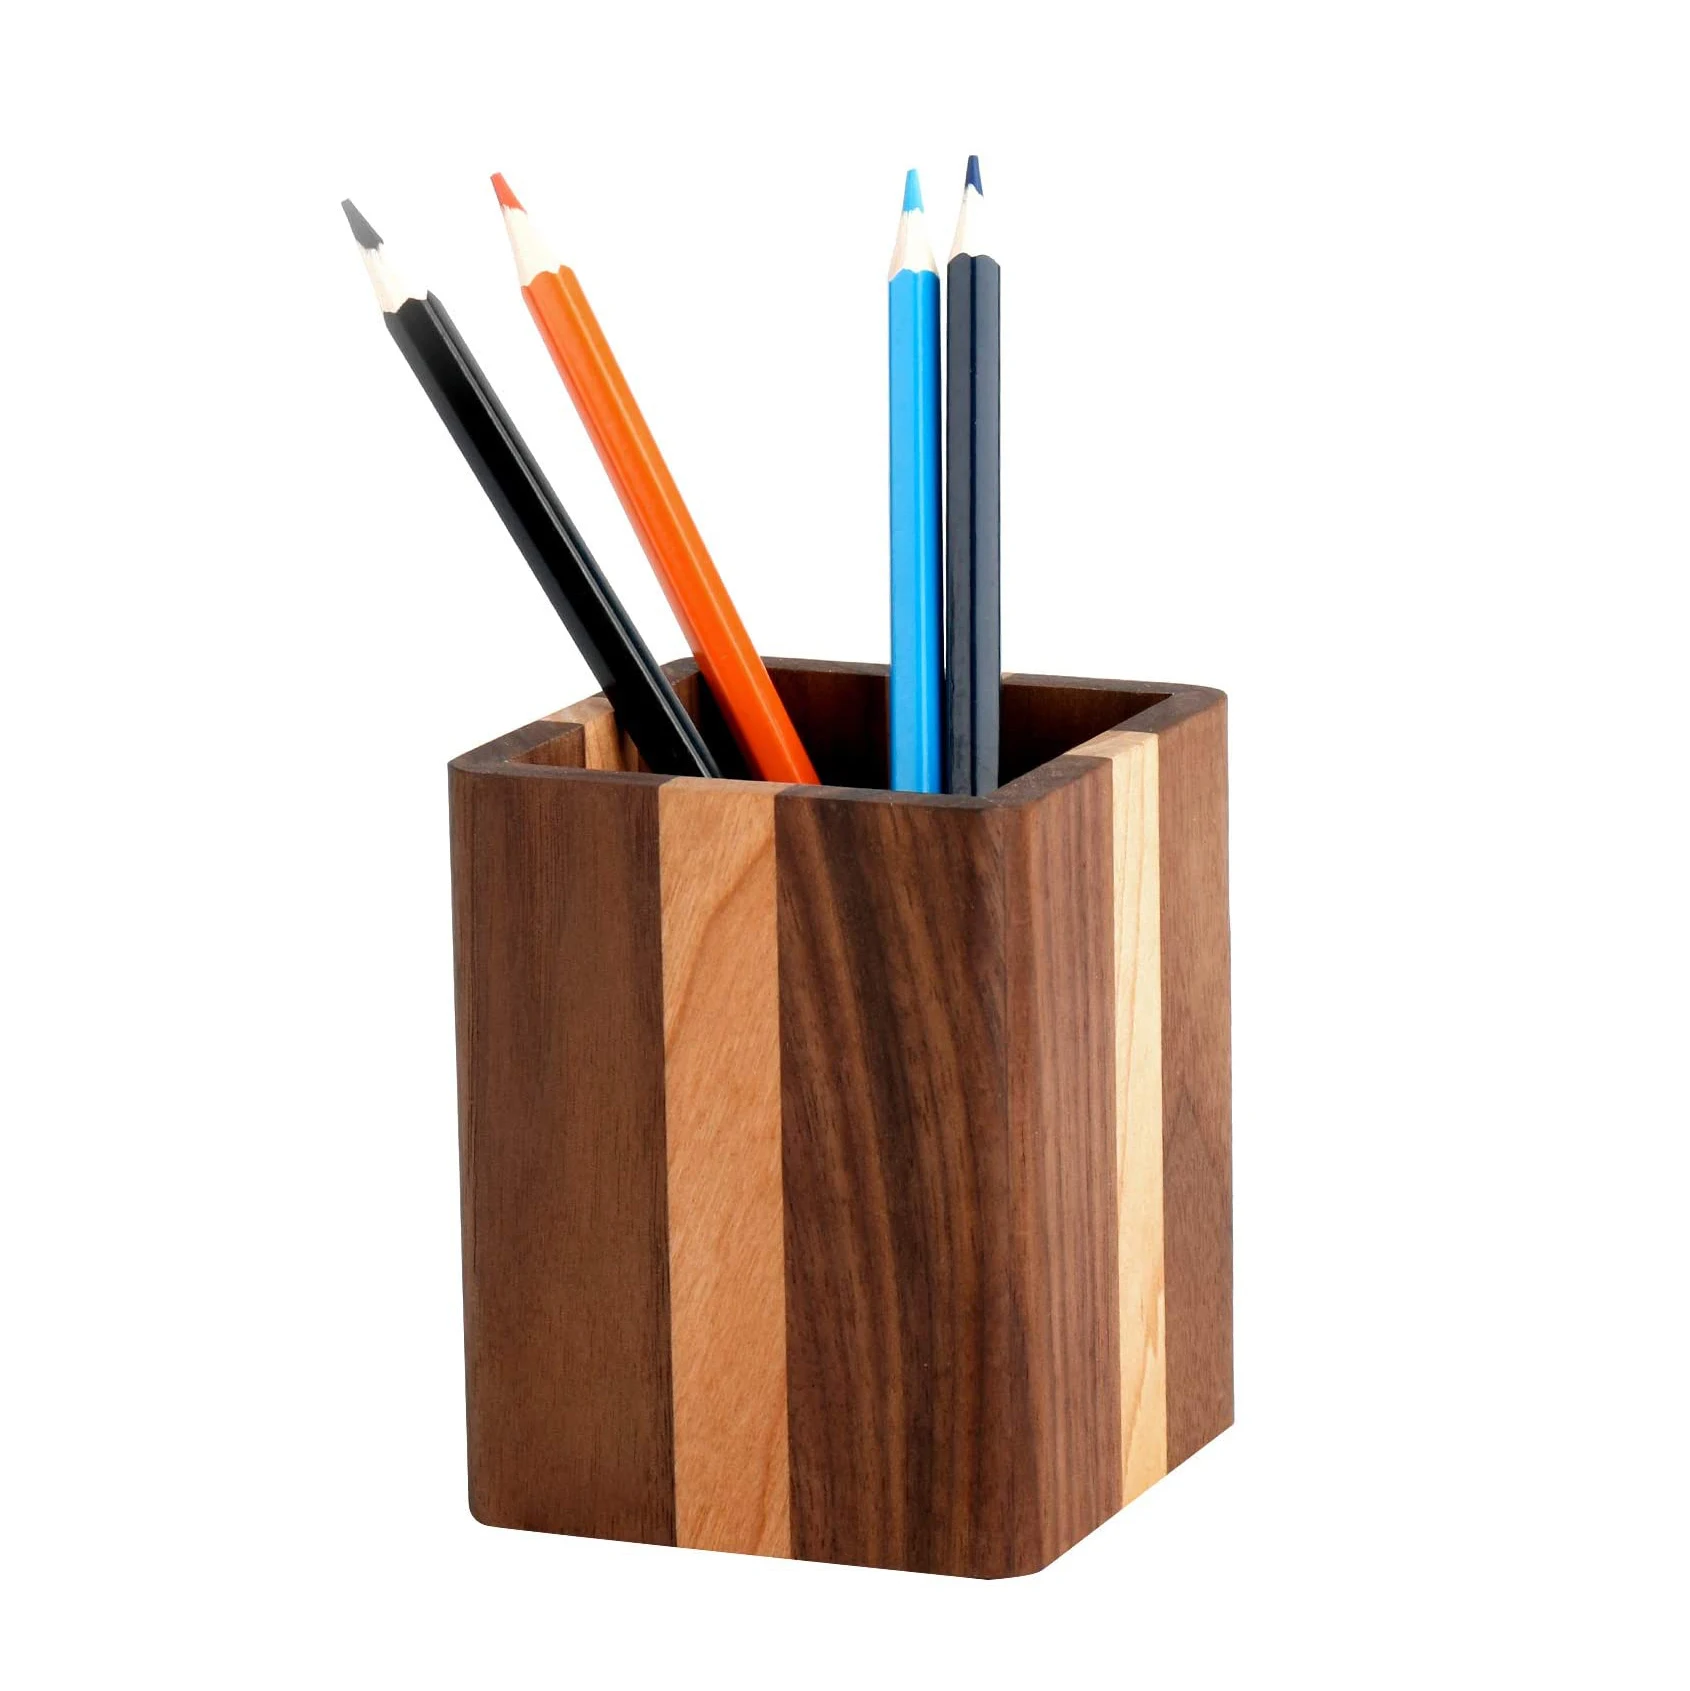 Desk pen. Подставка для карандашей круглая. Подставка для карандашей квадратная. Ручка подставка для офиса и карандаши деревянные. Pencil Stand.